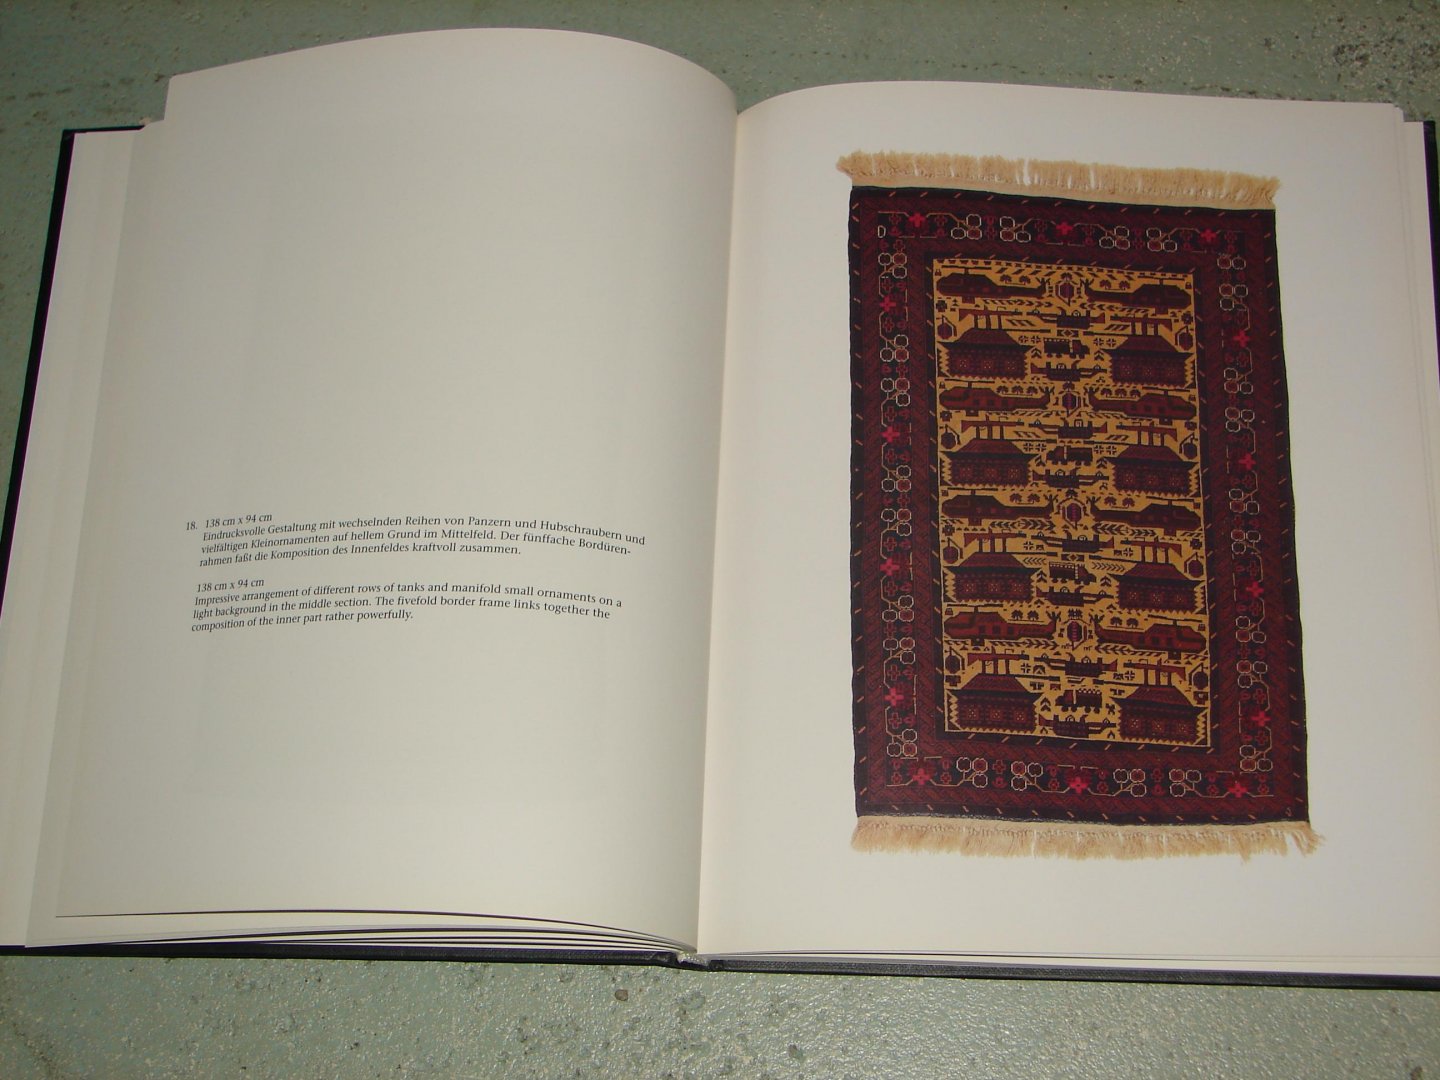 Böhning, Walter - Afghanische Teppiche mit kriegsmotiven